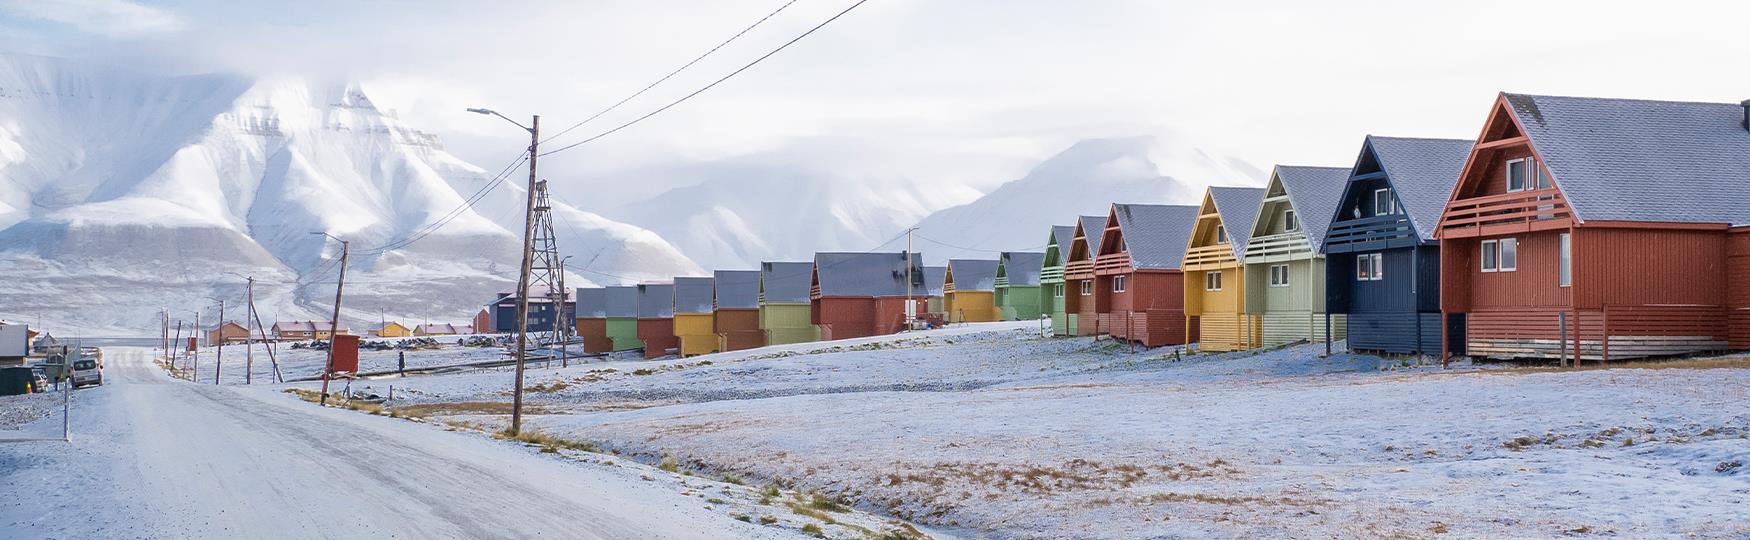 Fargerike hus med snødekte tak